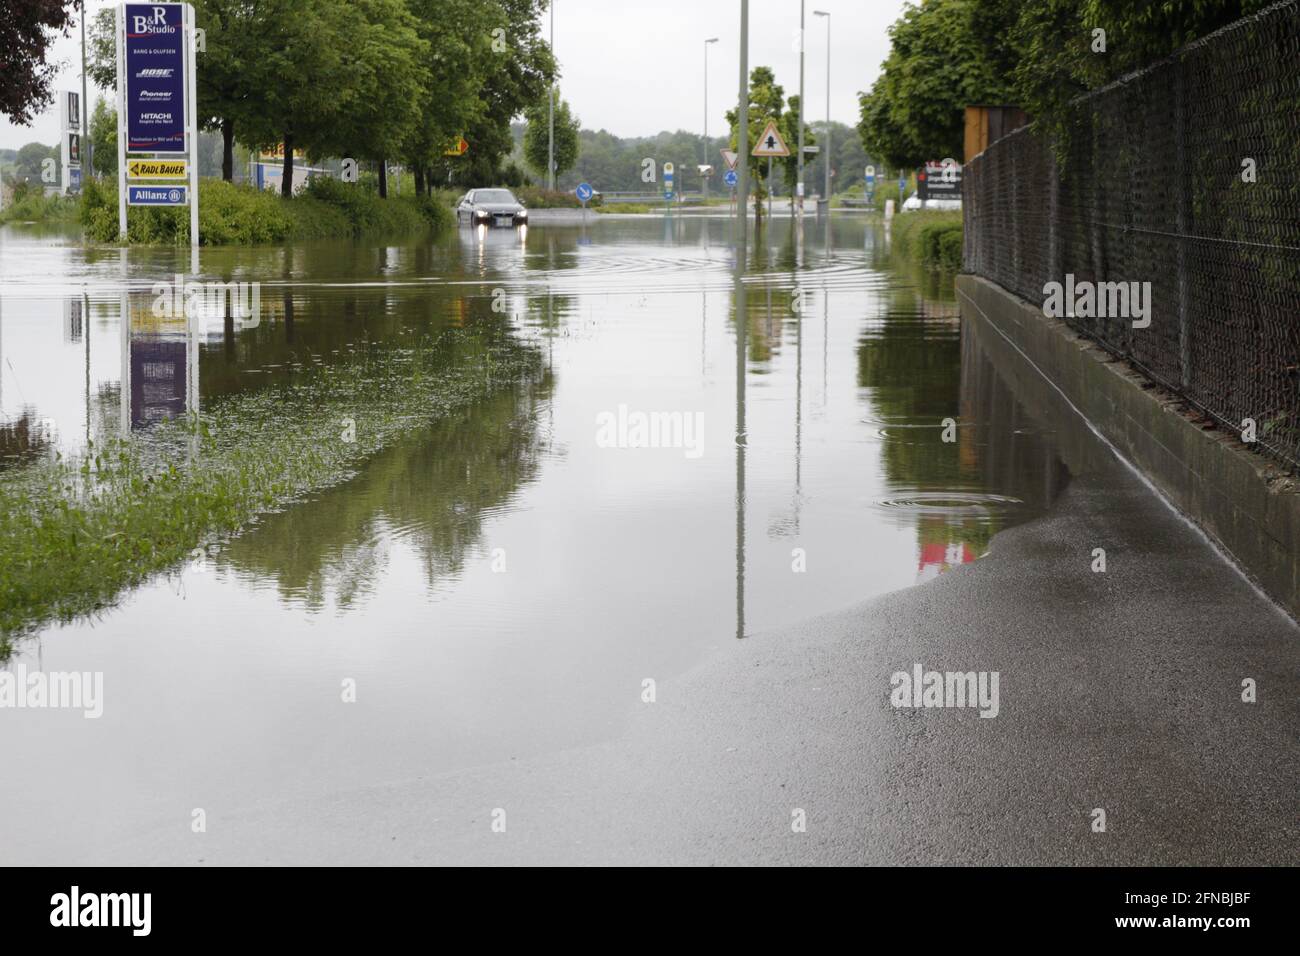 Überschwemmung auf dem Gehweg und auf der Strasse - Hochwasser Stock Photo